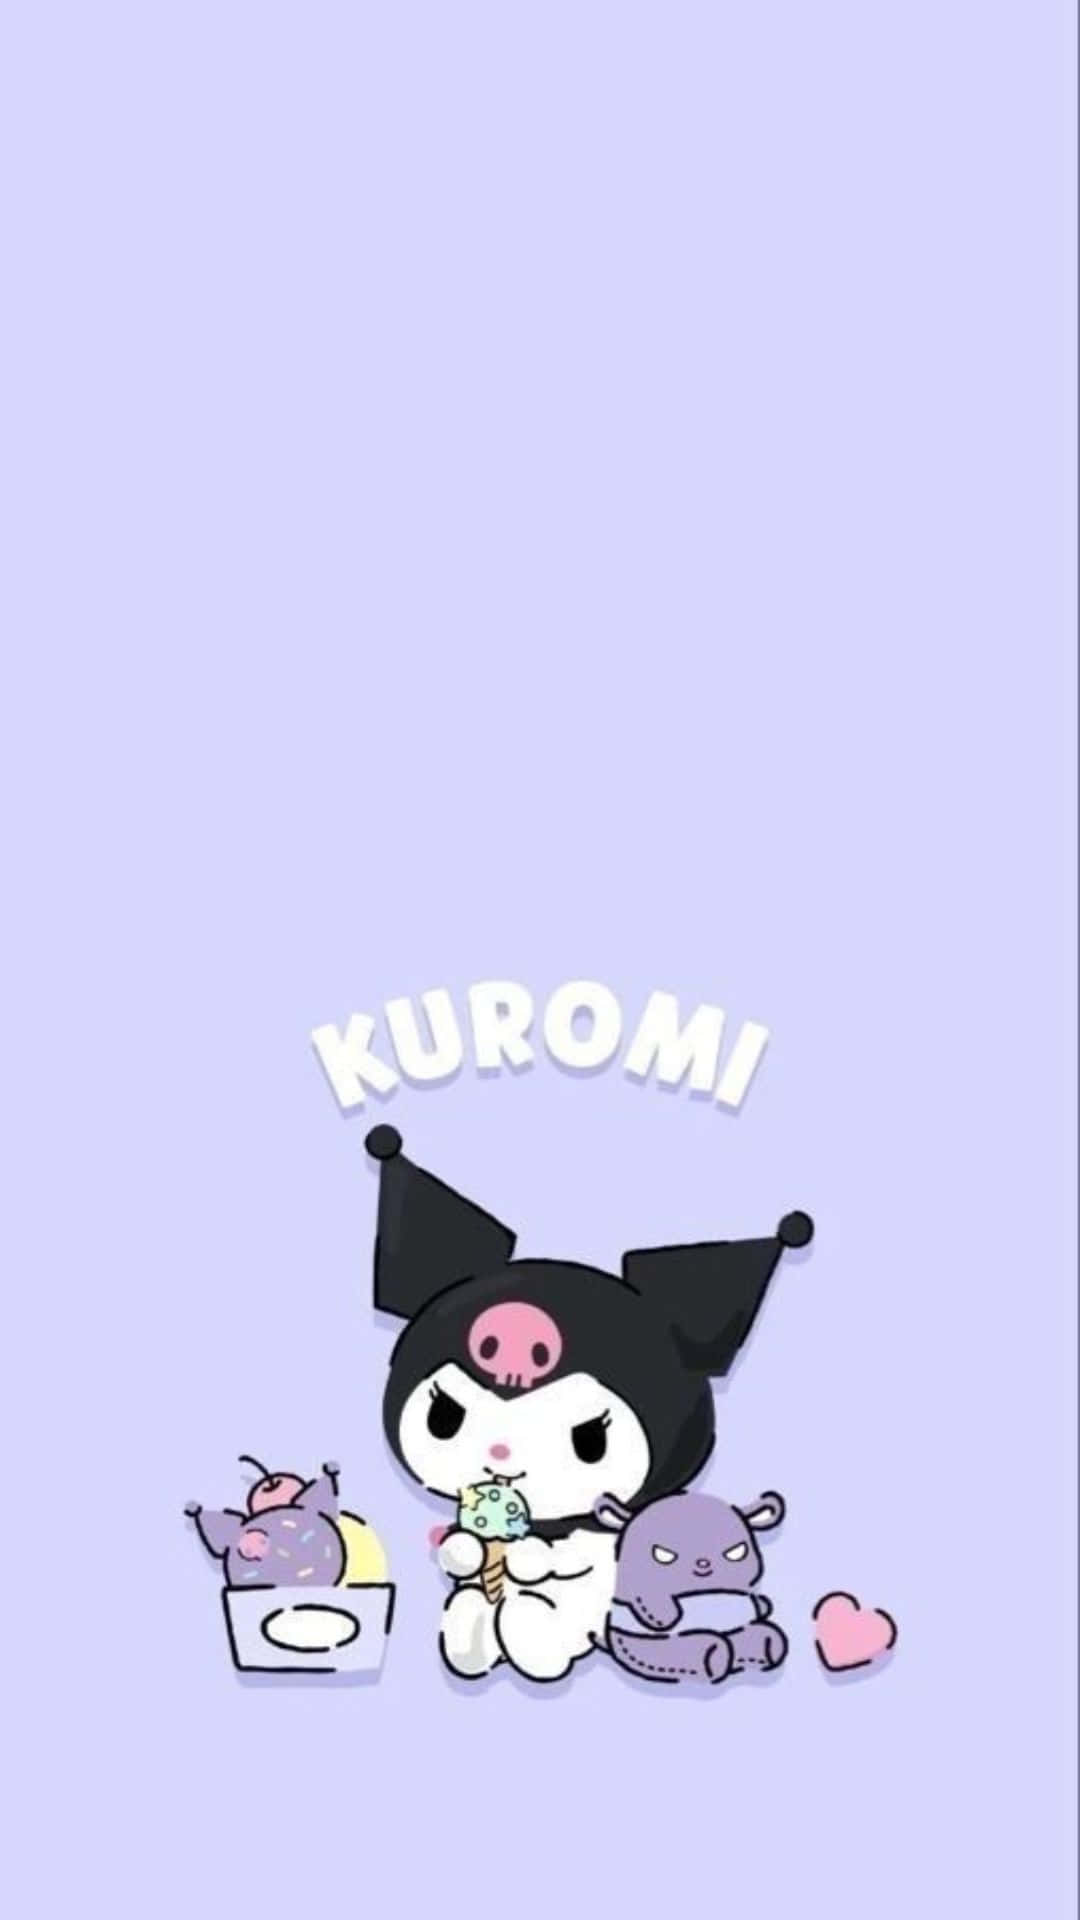 Kuromi Kawaii's World of Cuteness Wallpaper